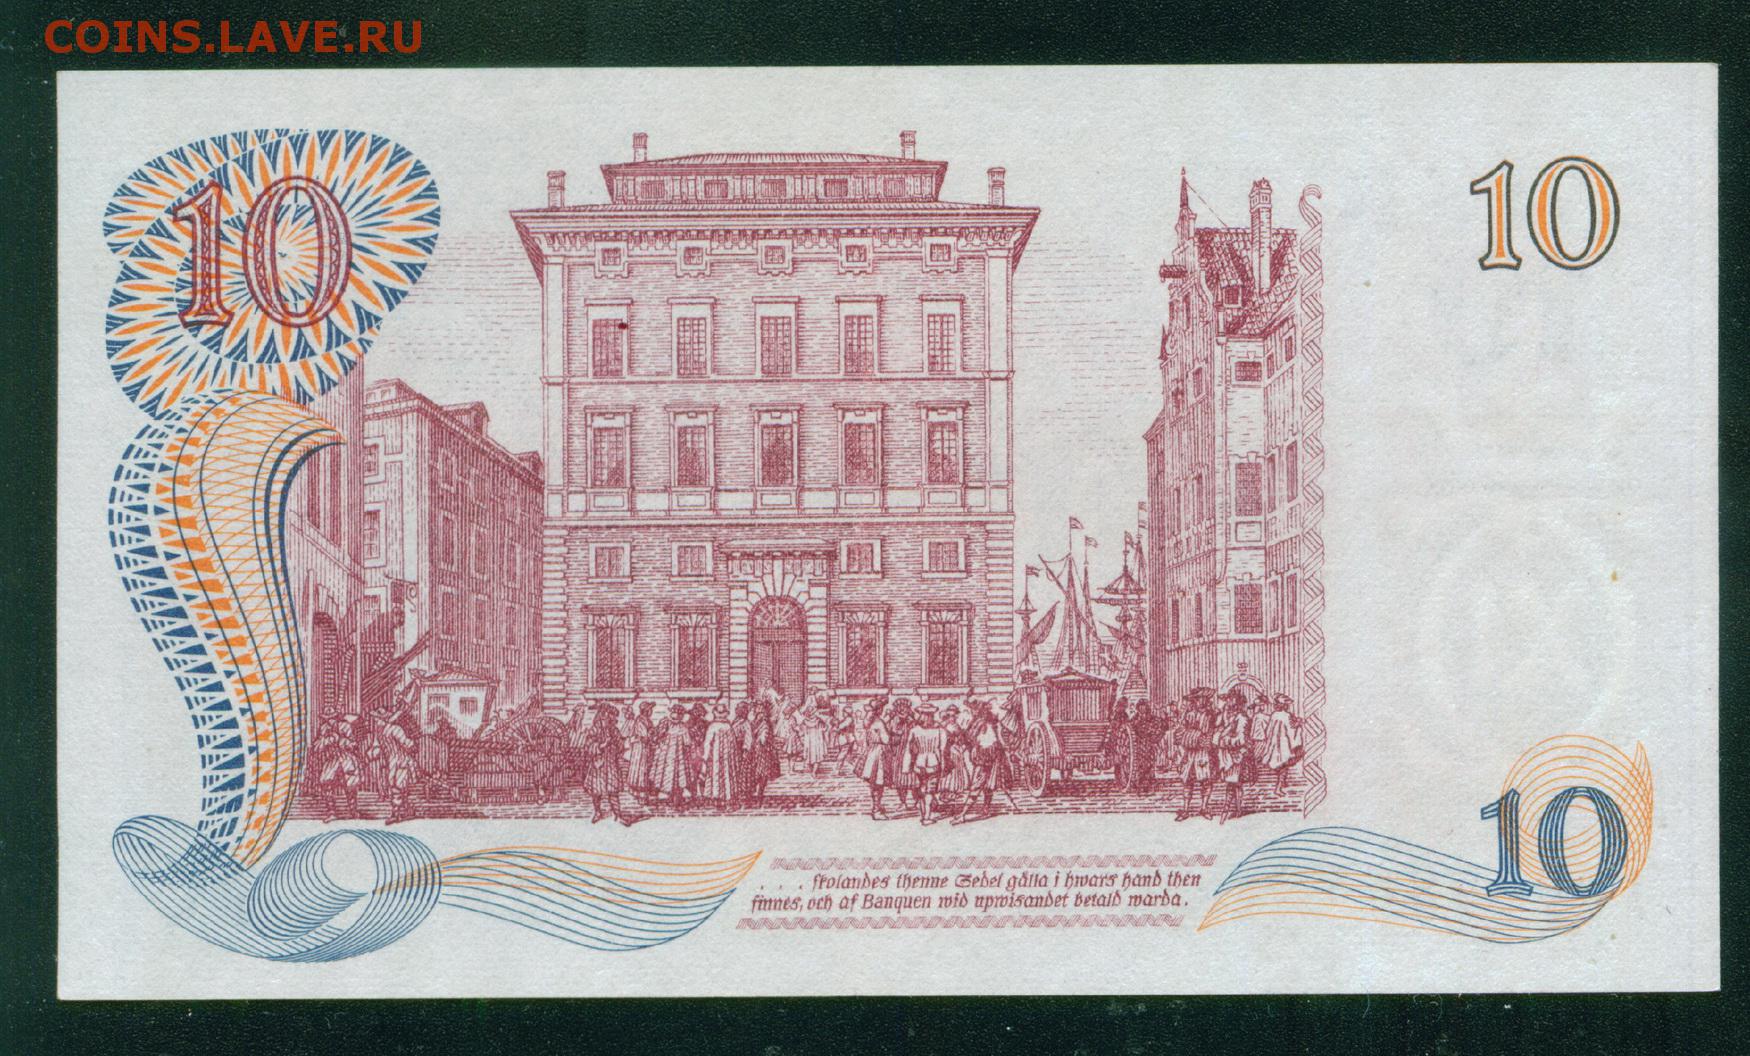 300 кронов в рублях. 10 Крон Швеция 1968. 10 Крон Швеция. Банкнота 10 крон Швеция 1968. Бумажная шведская банкнота.